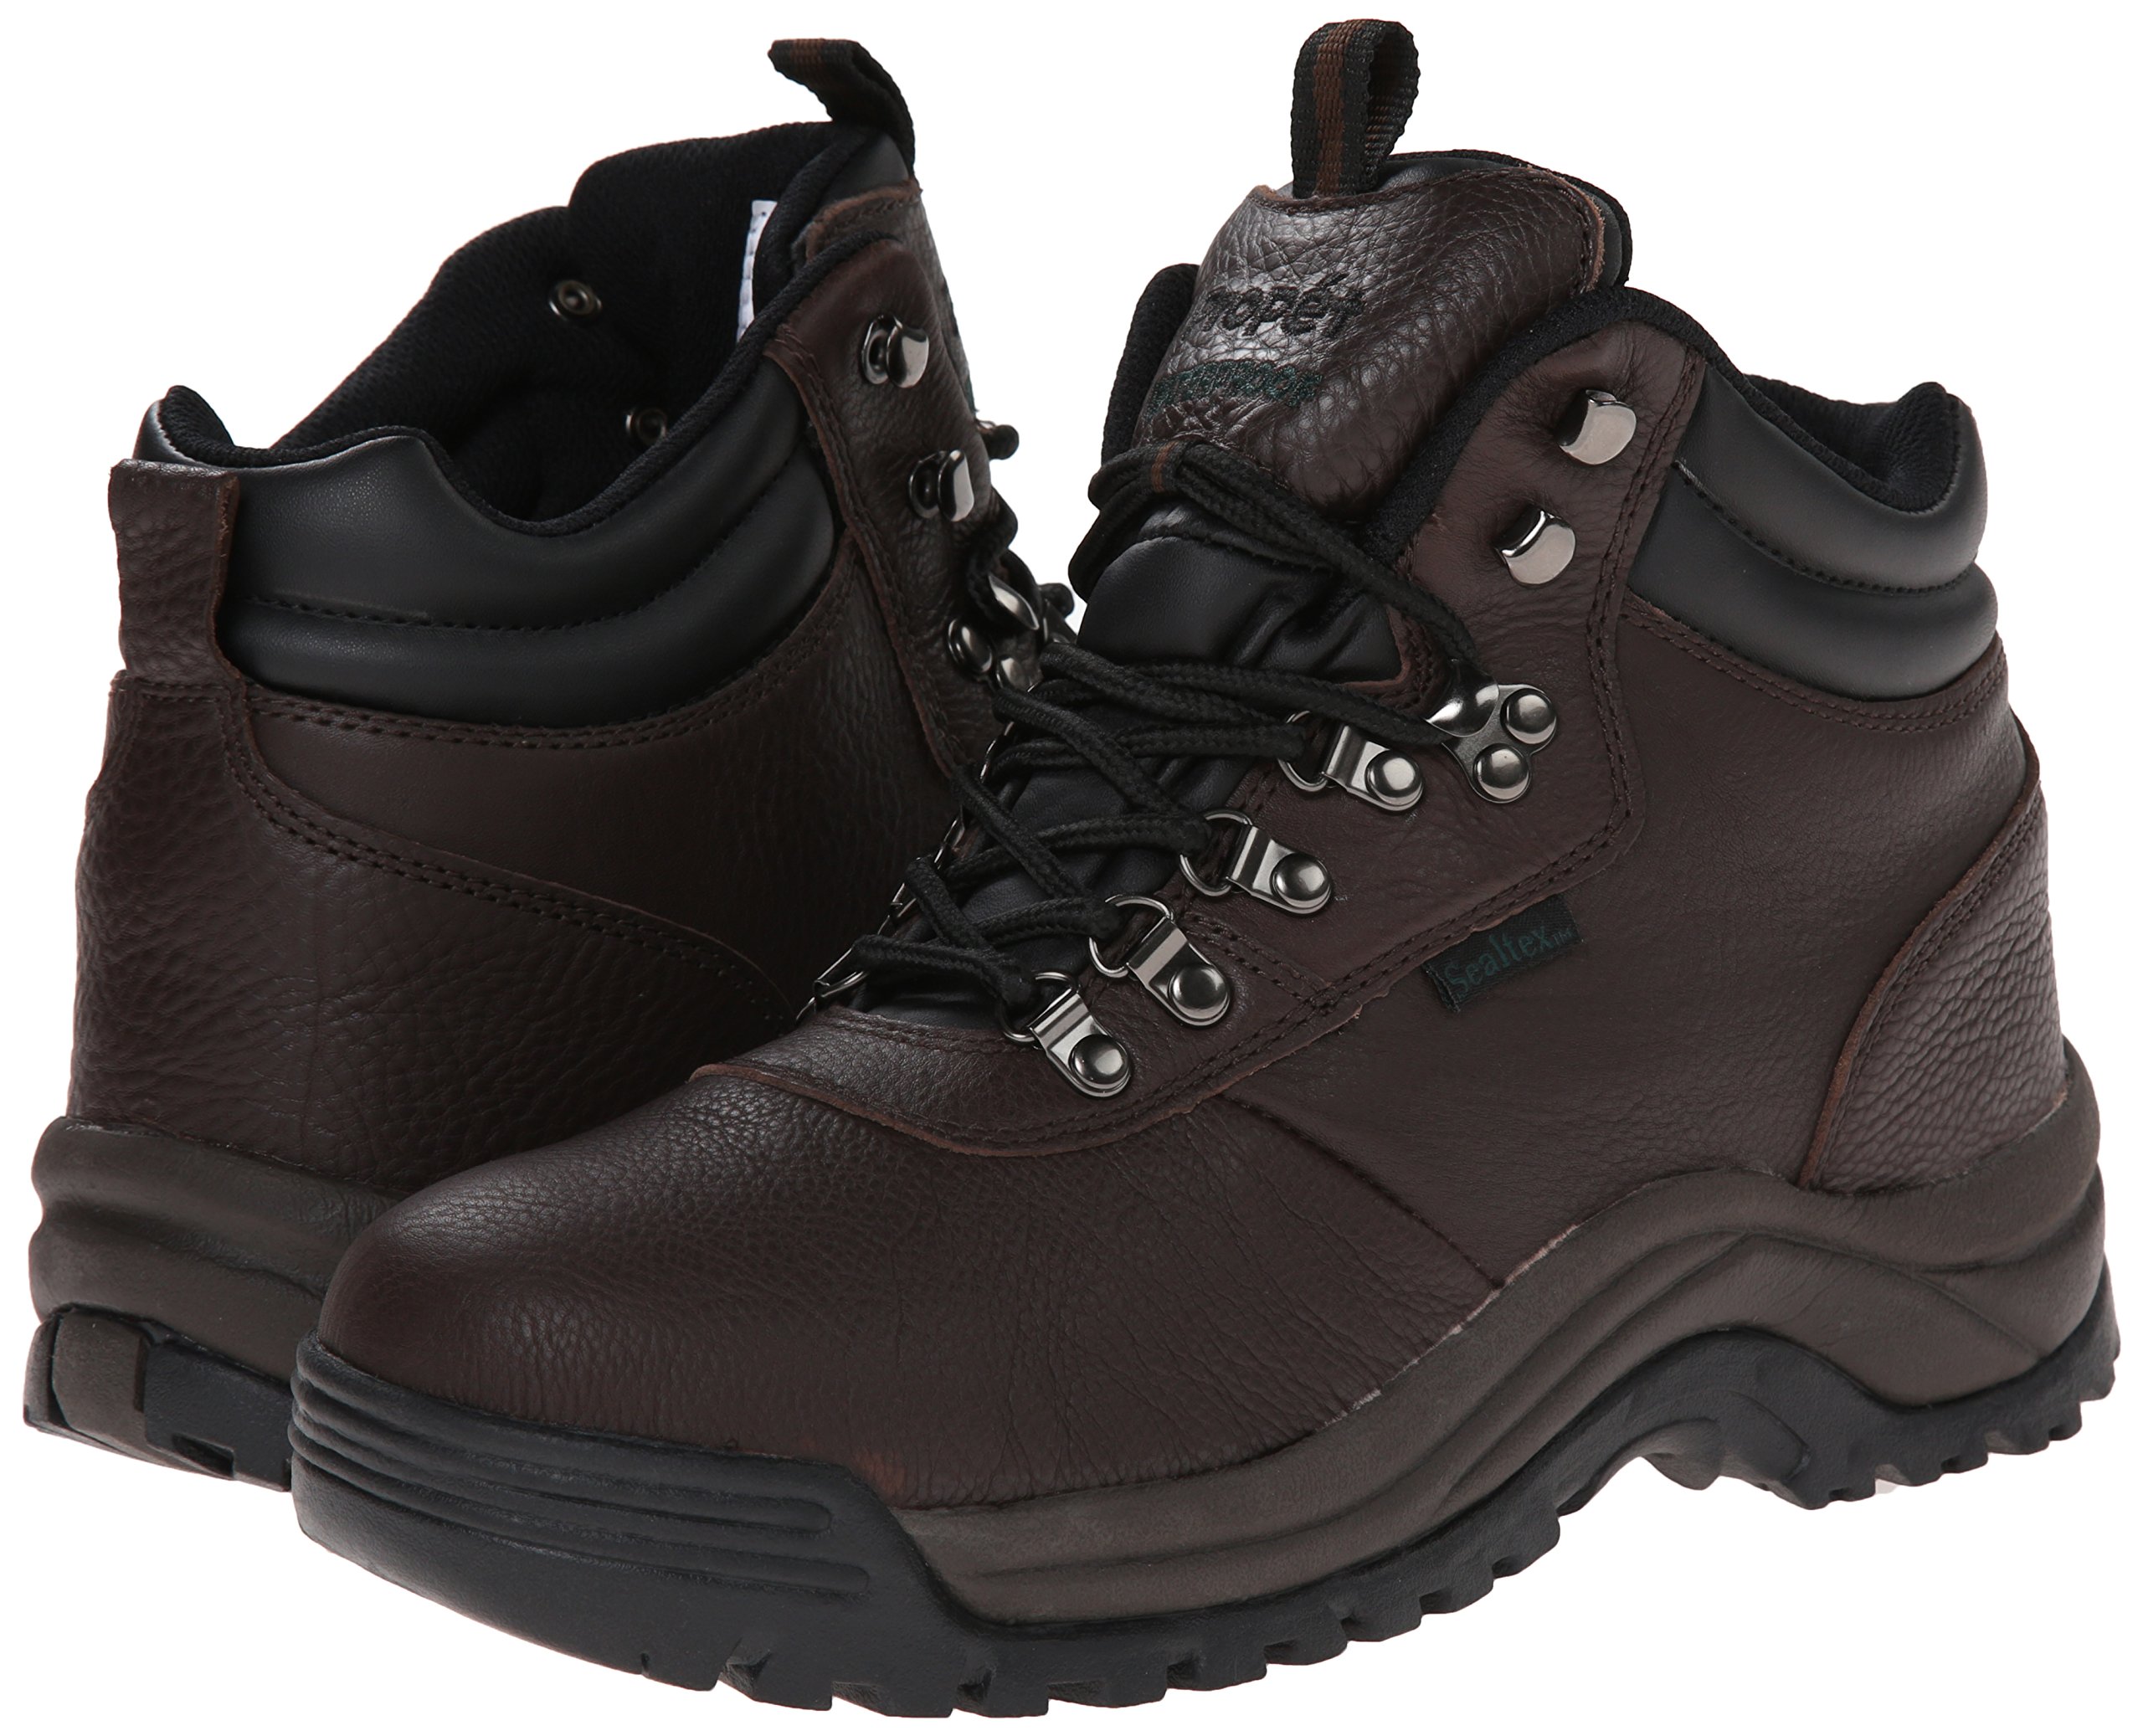 Propét Men's Cliff Walker Medicare/Hcpcs Code = A5500 Diabetic Shoe Hiking Boot